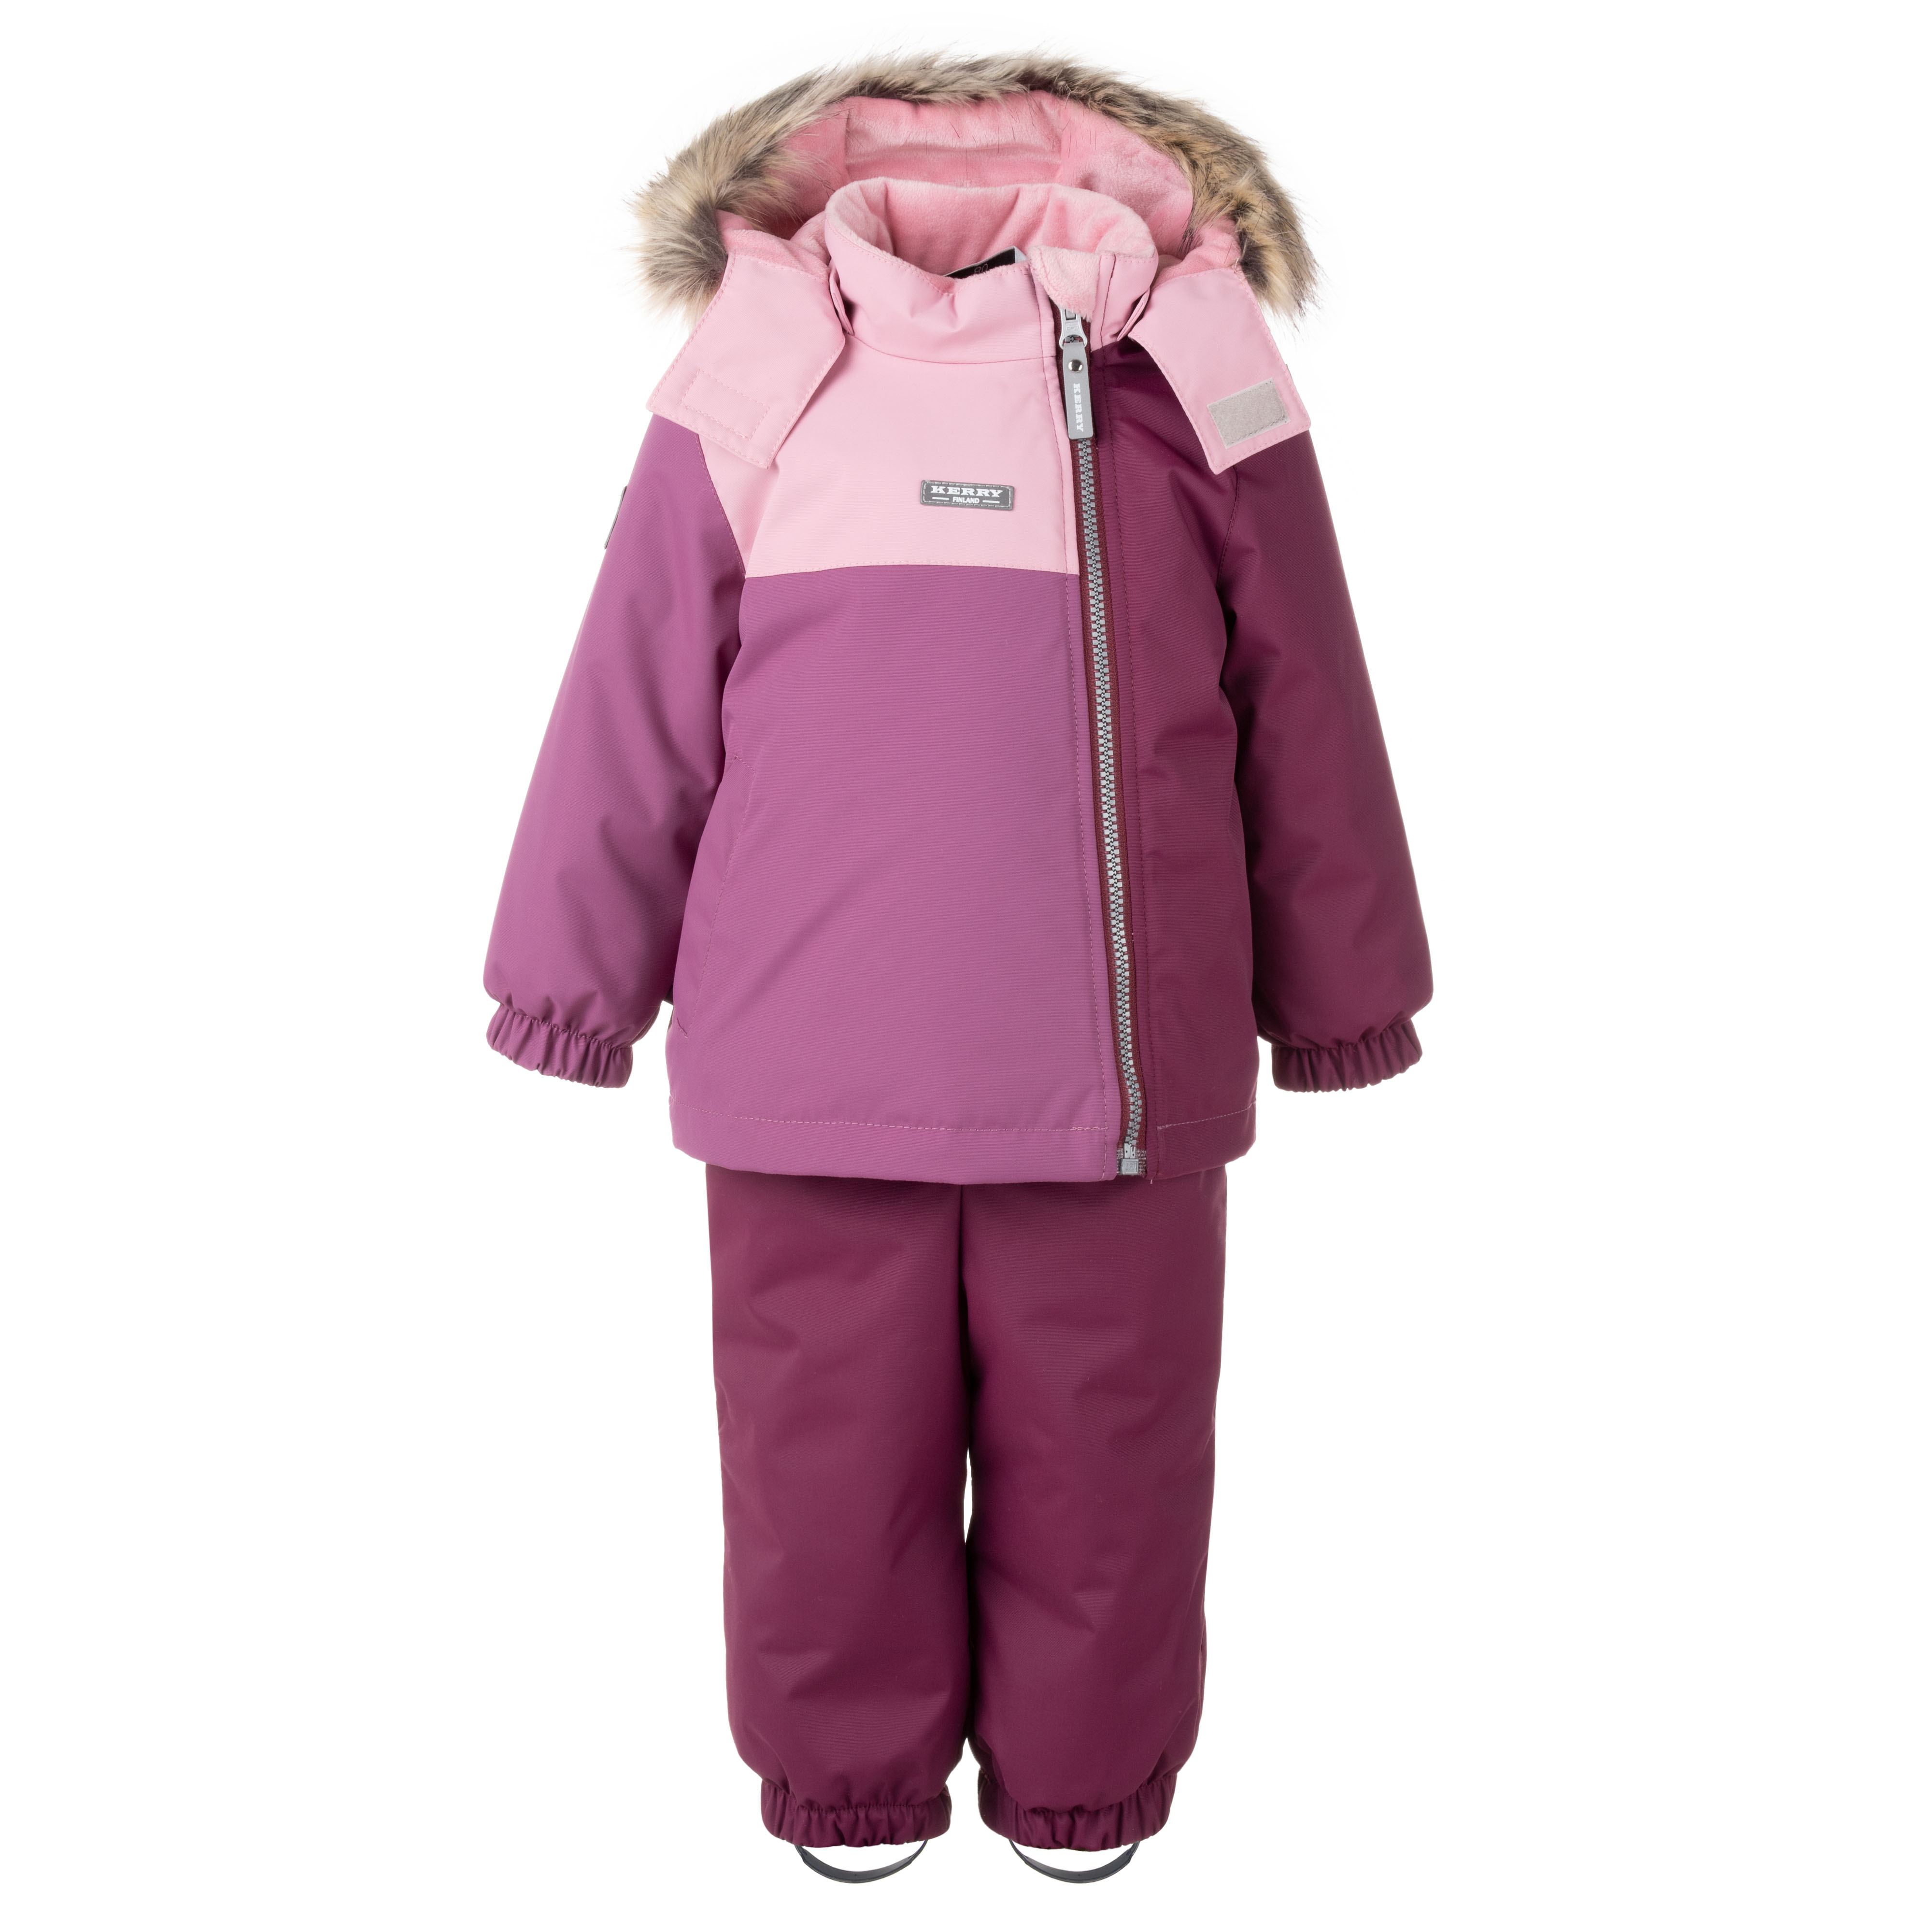 Комплект детской верхней одежды KERRY K22417, бордовый, 80 рюкзак текстильный с печатью на верхней части sorry 38х29х11 см бордовый